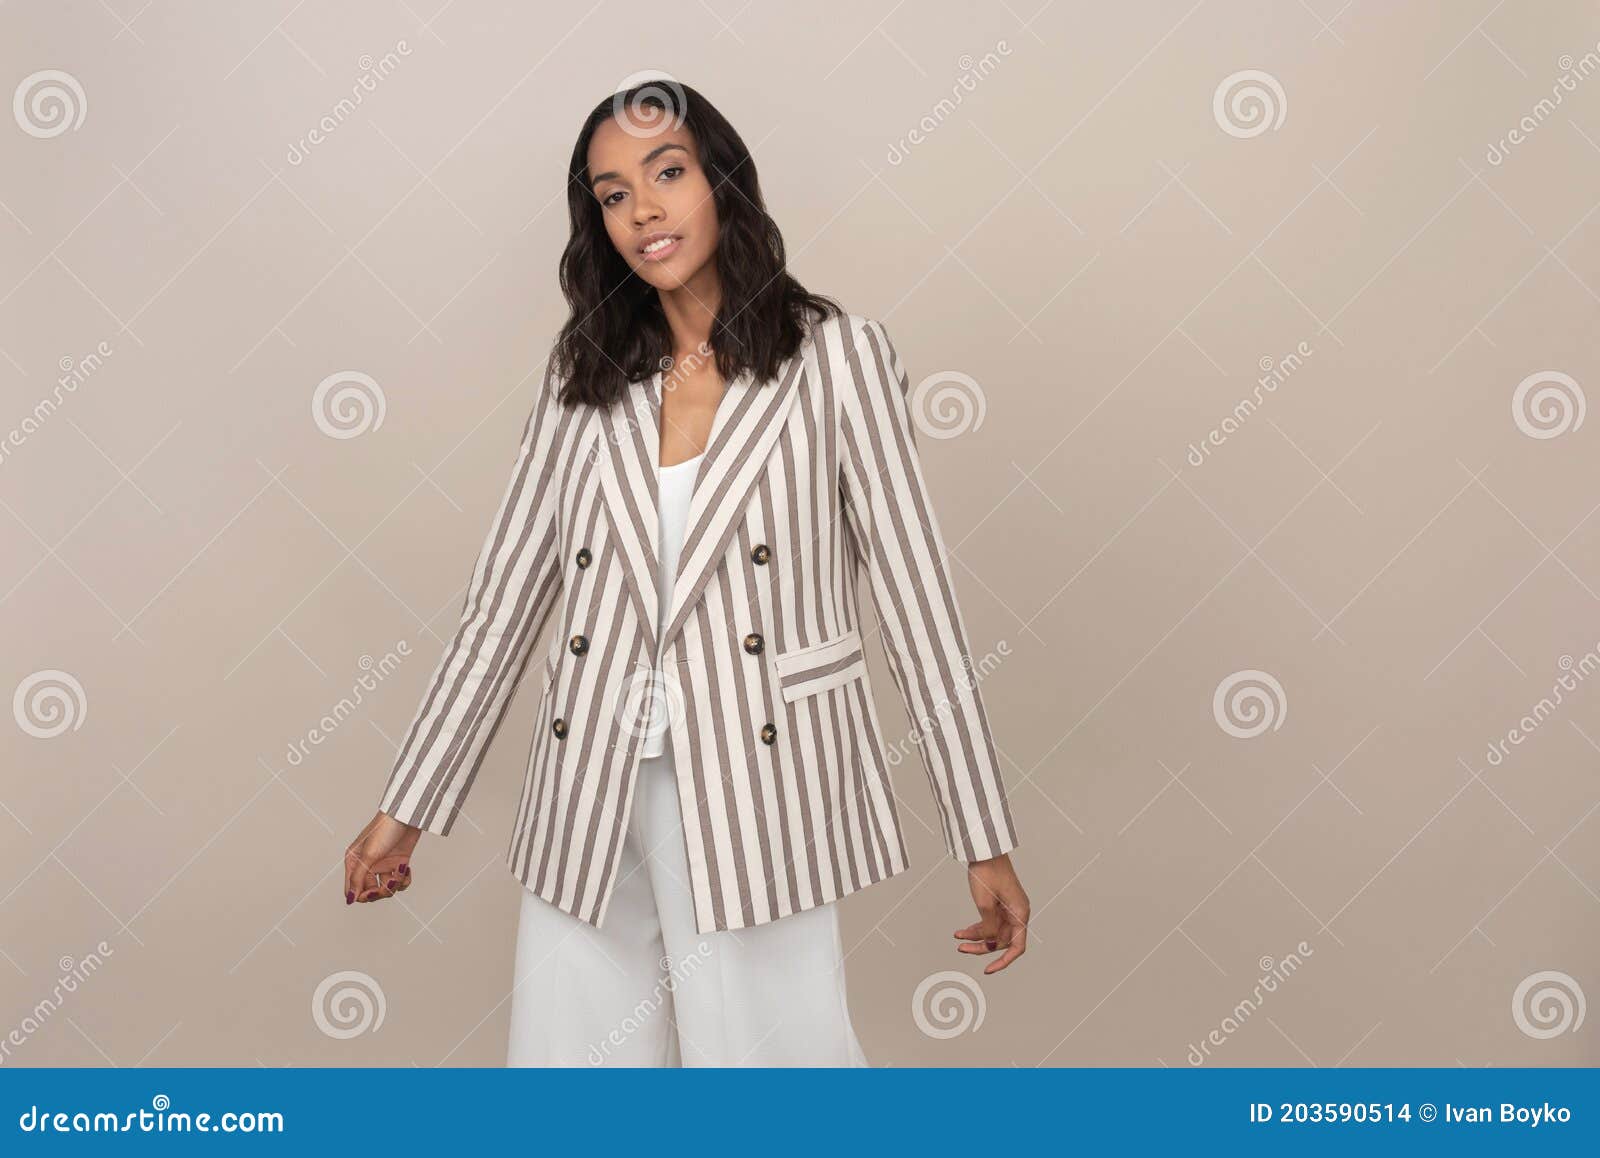 Simple Y Elegante Mujer Con Chaqueta a Rayas Foto de archivo - Imagen de afro, ropas: 203590514